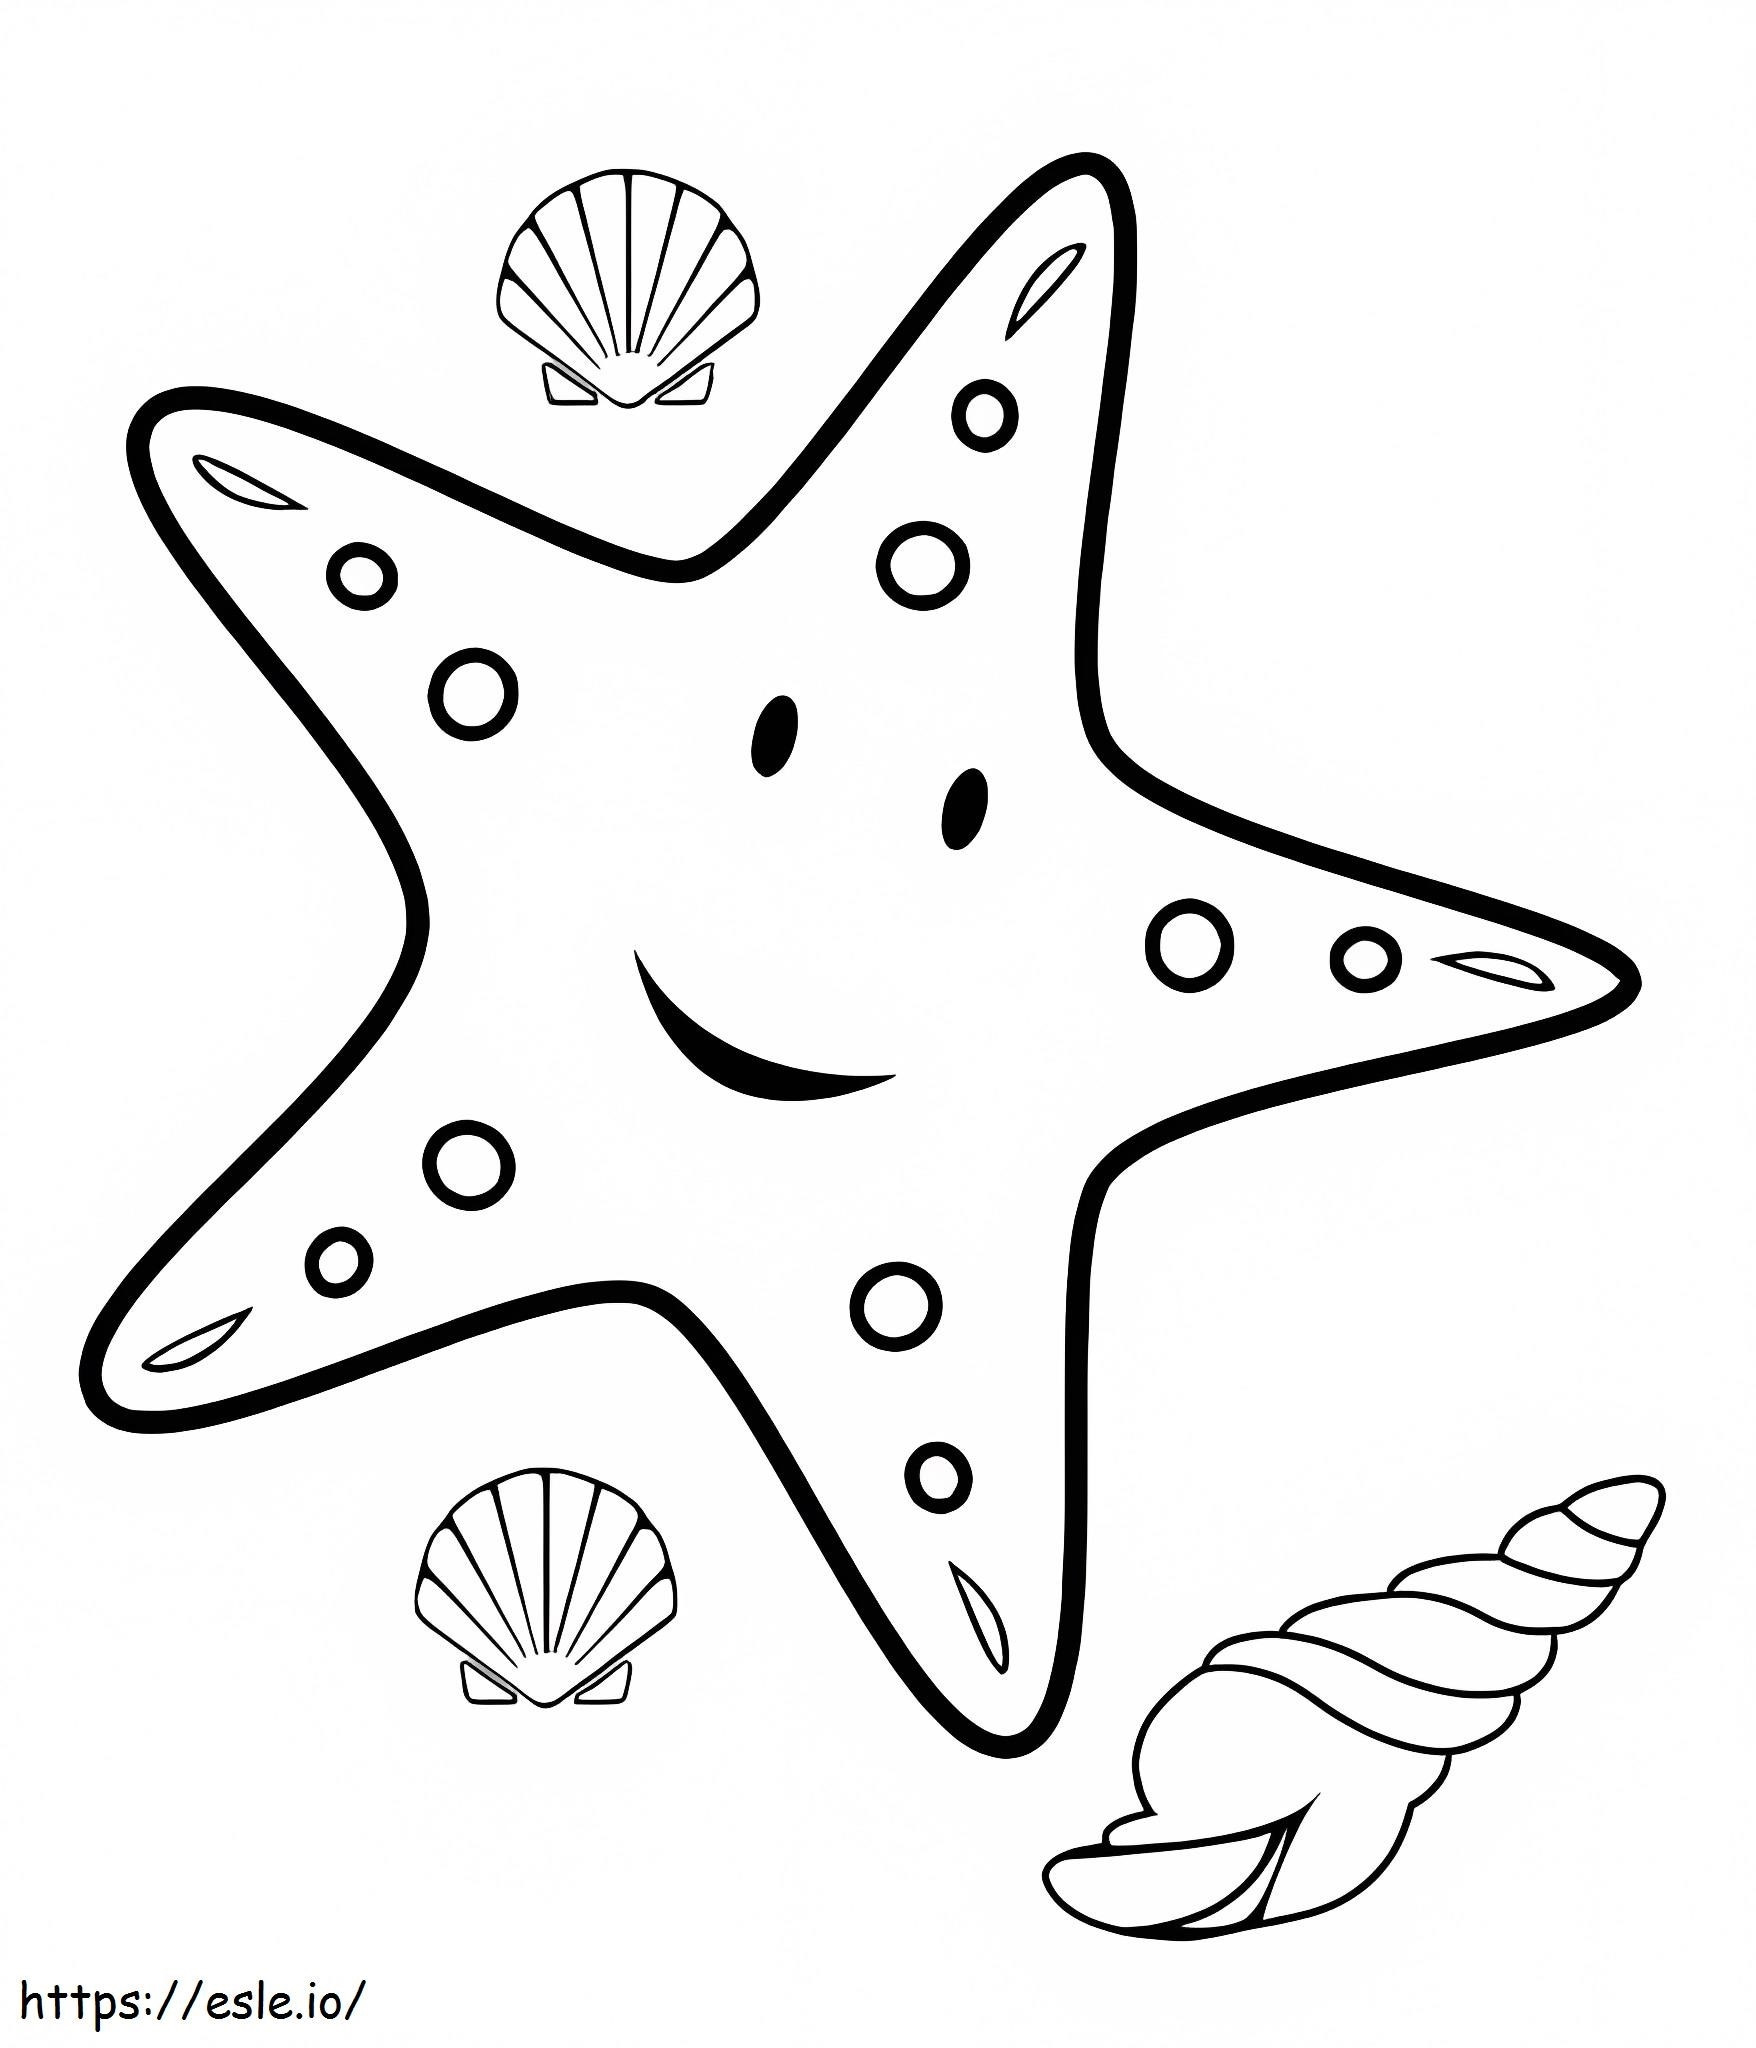 Estrelas do mar e caracóis marinhos, conchas do mar para colorir